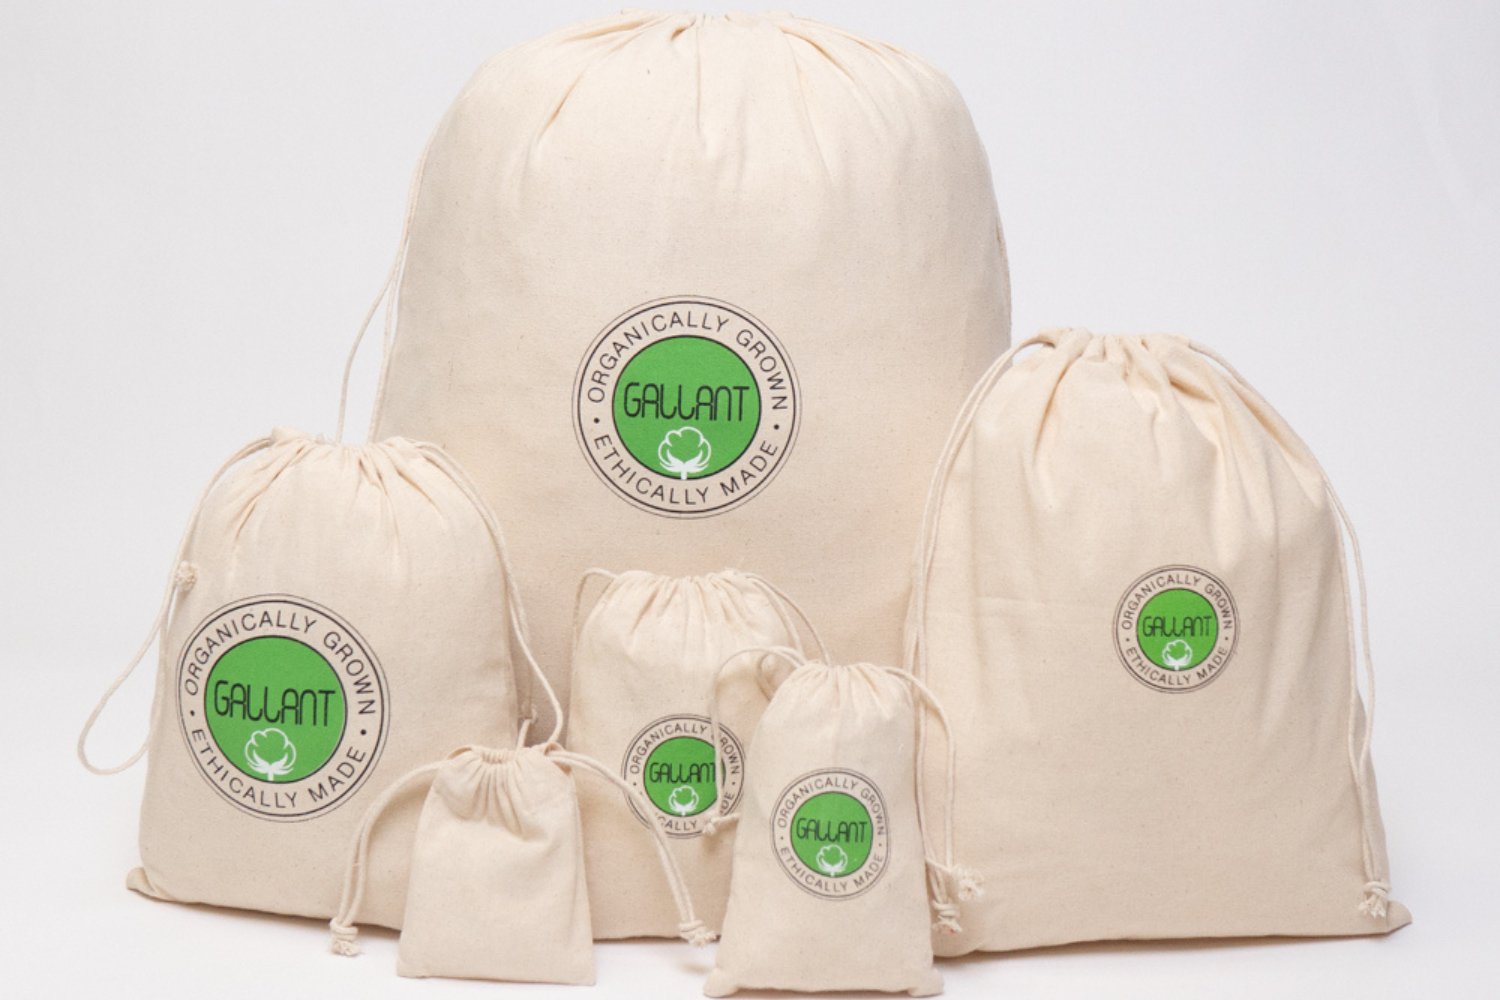 Muslin Bags Wholesale, Wholesale Muslin Bags